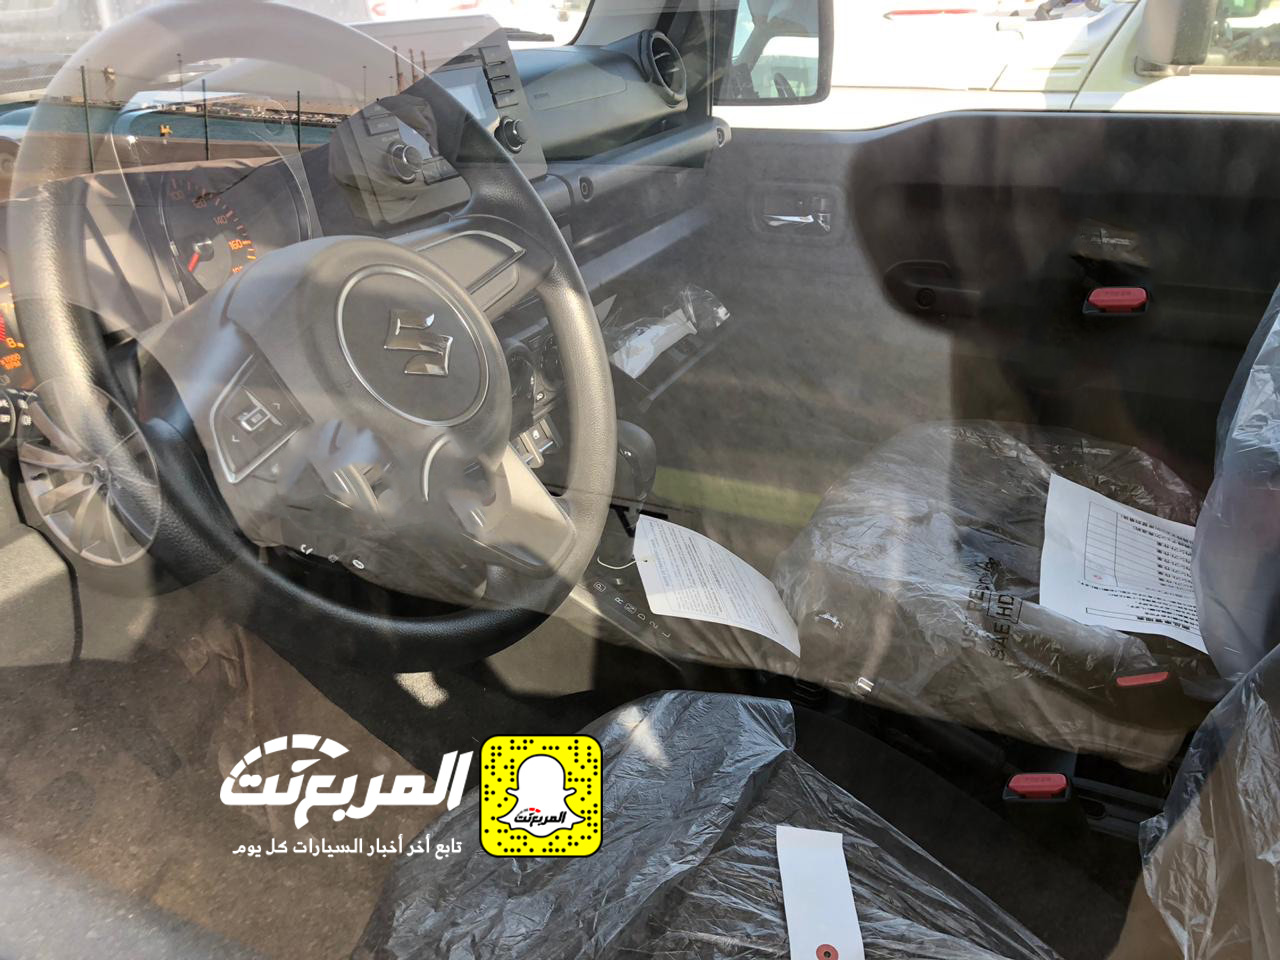 "بالصور" وصول سوزوكي جيمني 2019 الشكل الجديد الى السعودية + المواصفات Suzuki Jimny 7